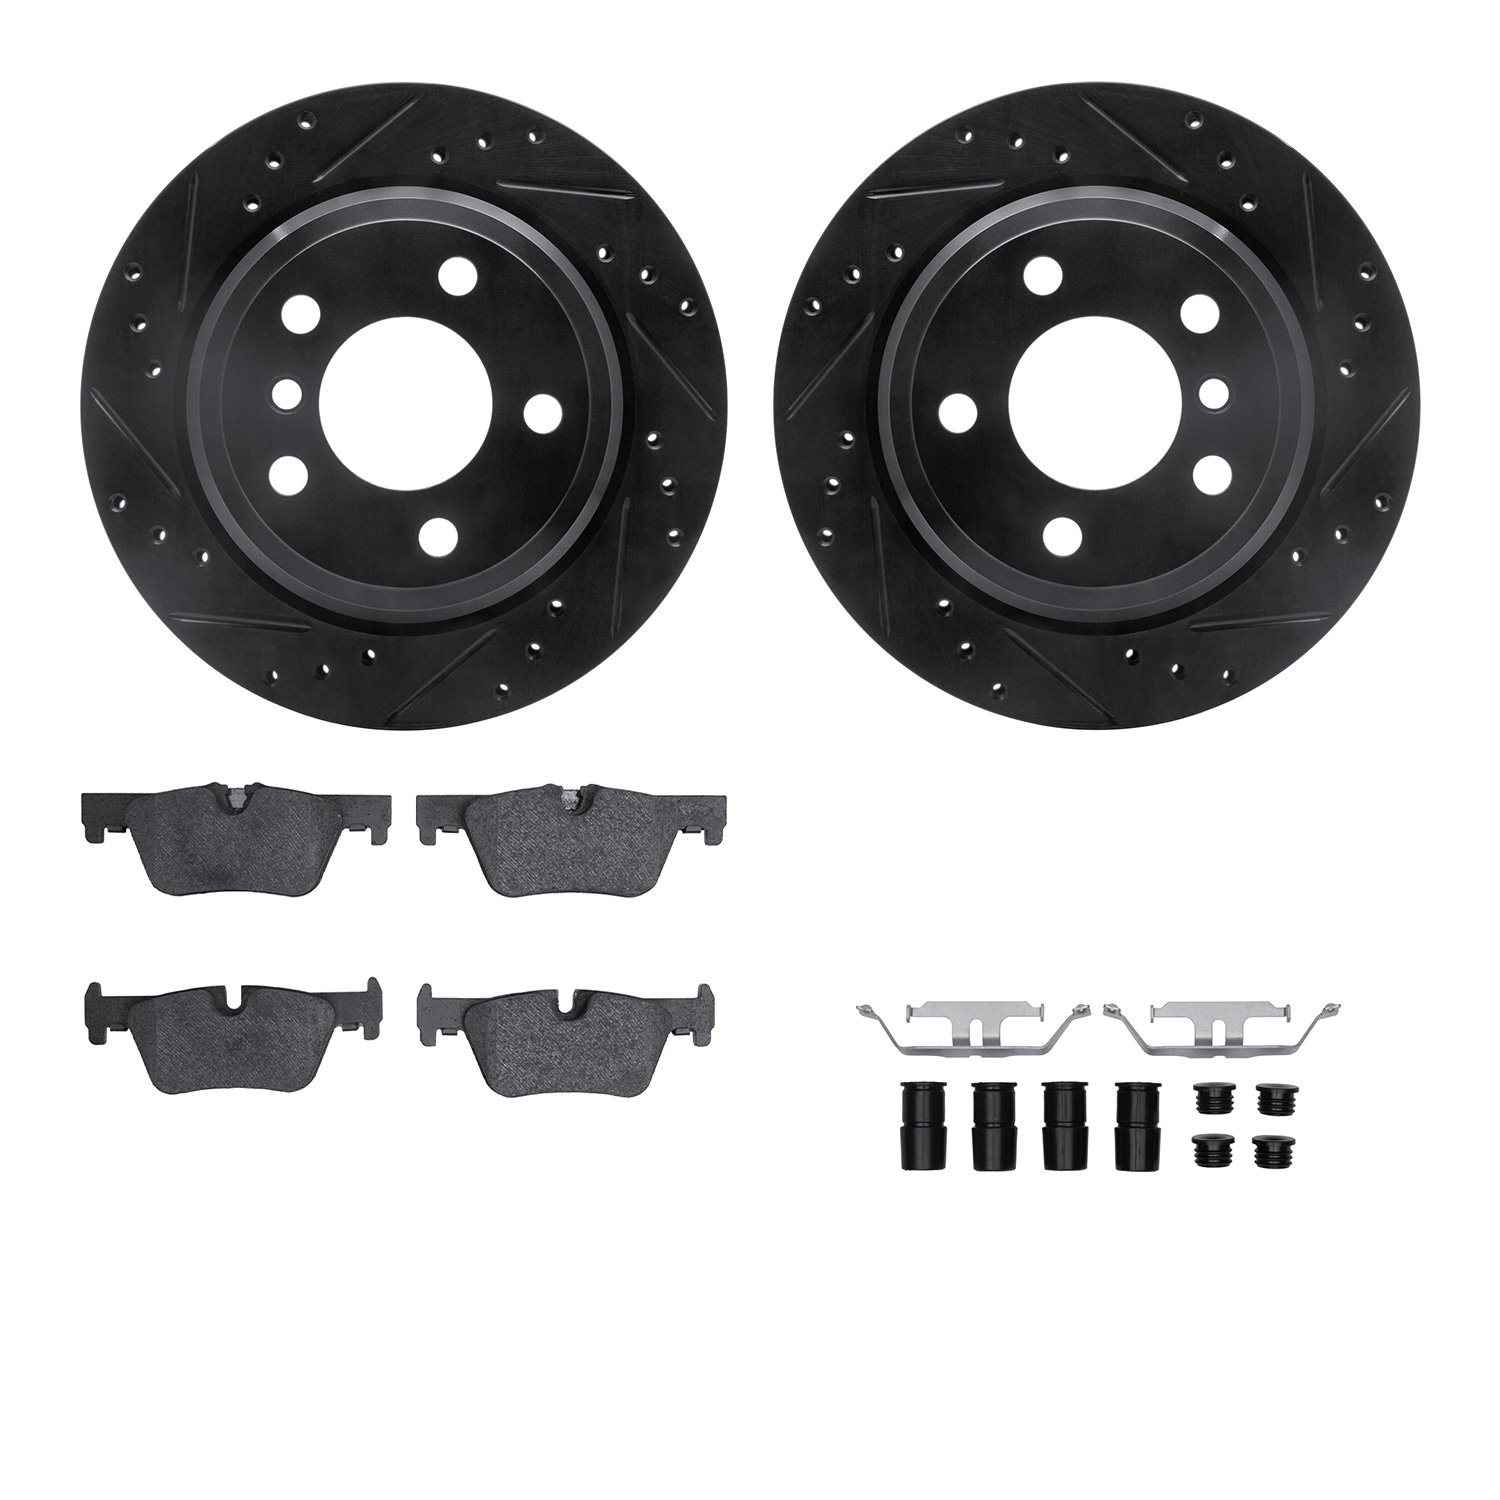 8612-31101 Drilled/Slotted Brake Rotors w/5000 Euro Ceramic Brake Pads Kit & Hardware [Black], 2013-2020 BMW, Position: Rear